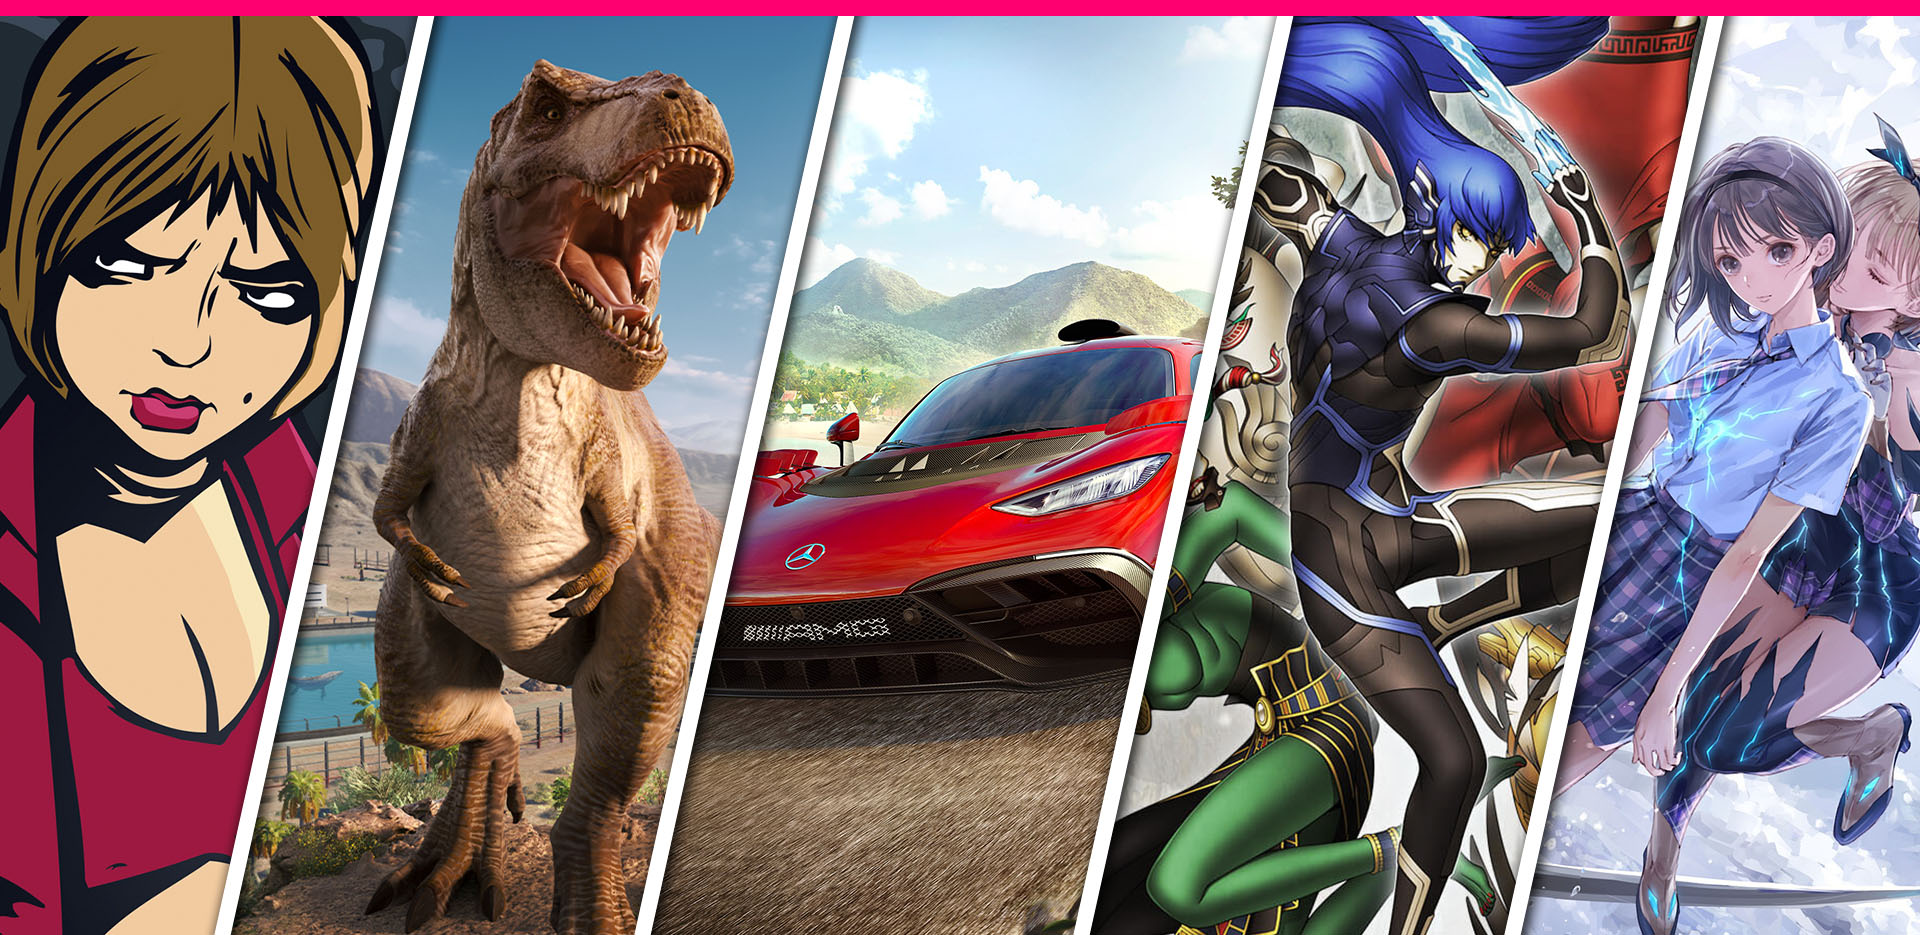 Forza Horizon 5 acumula 30 millones de jugadores desde su